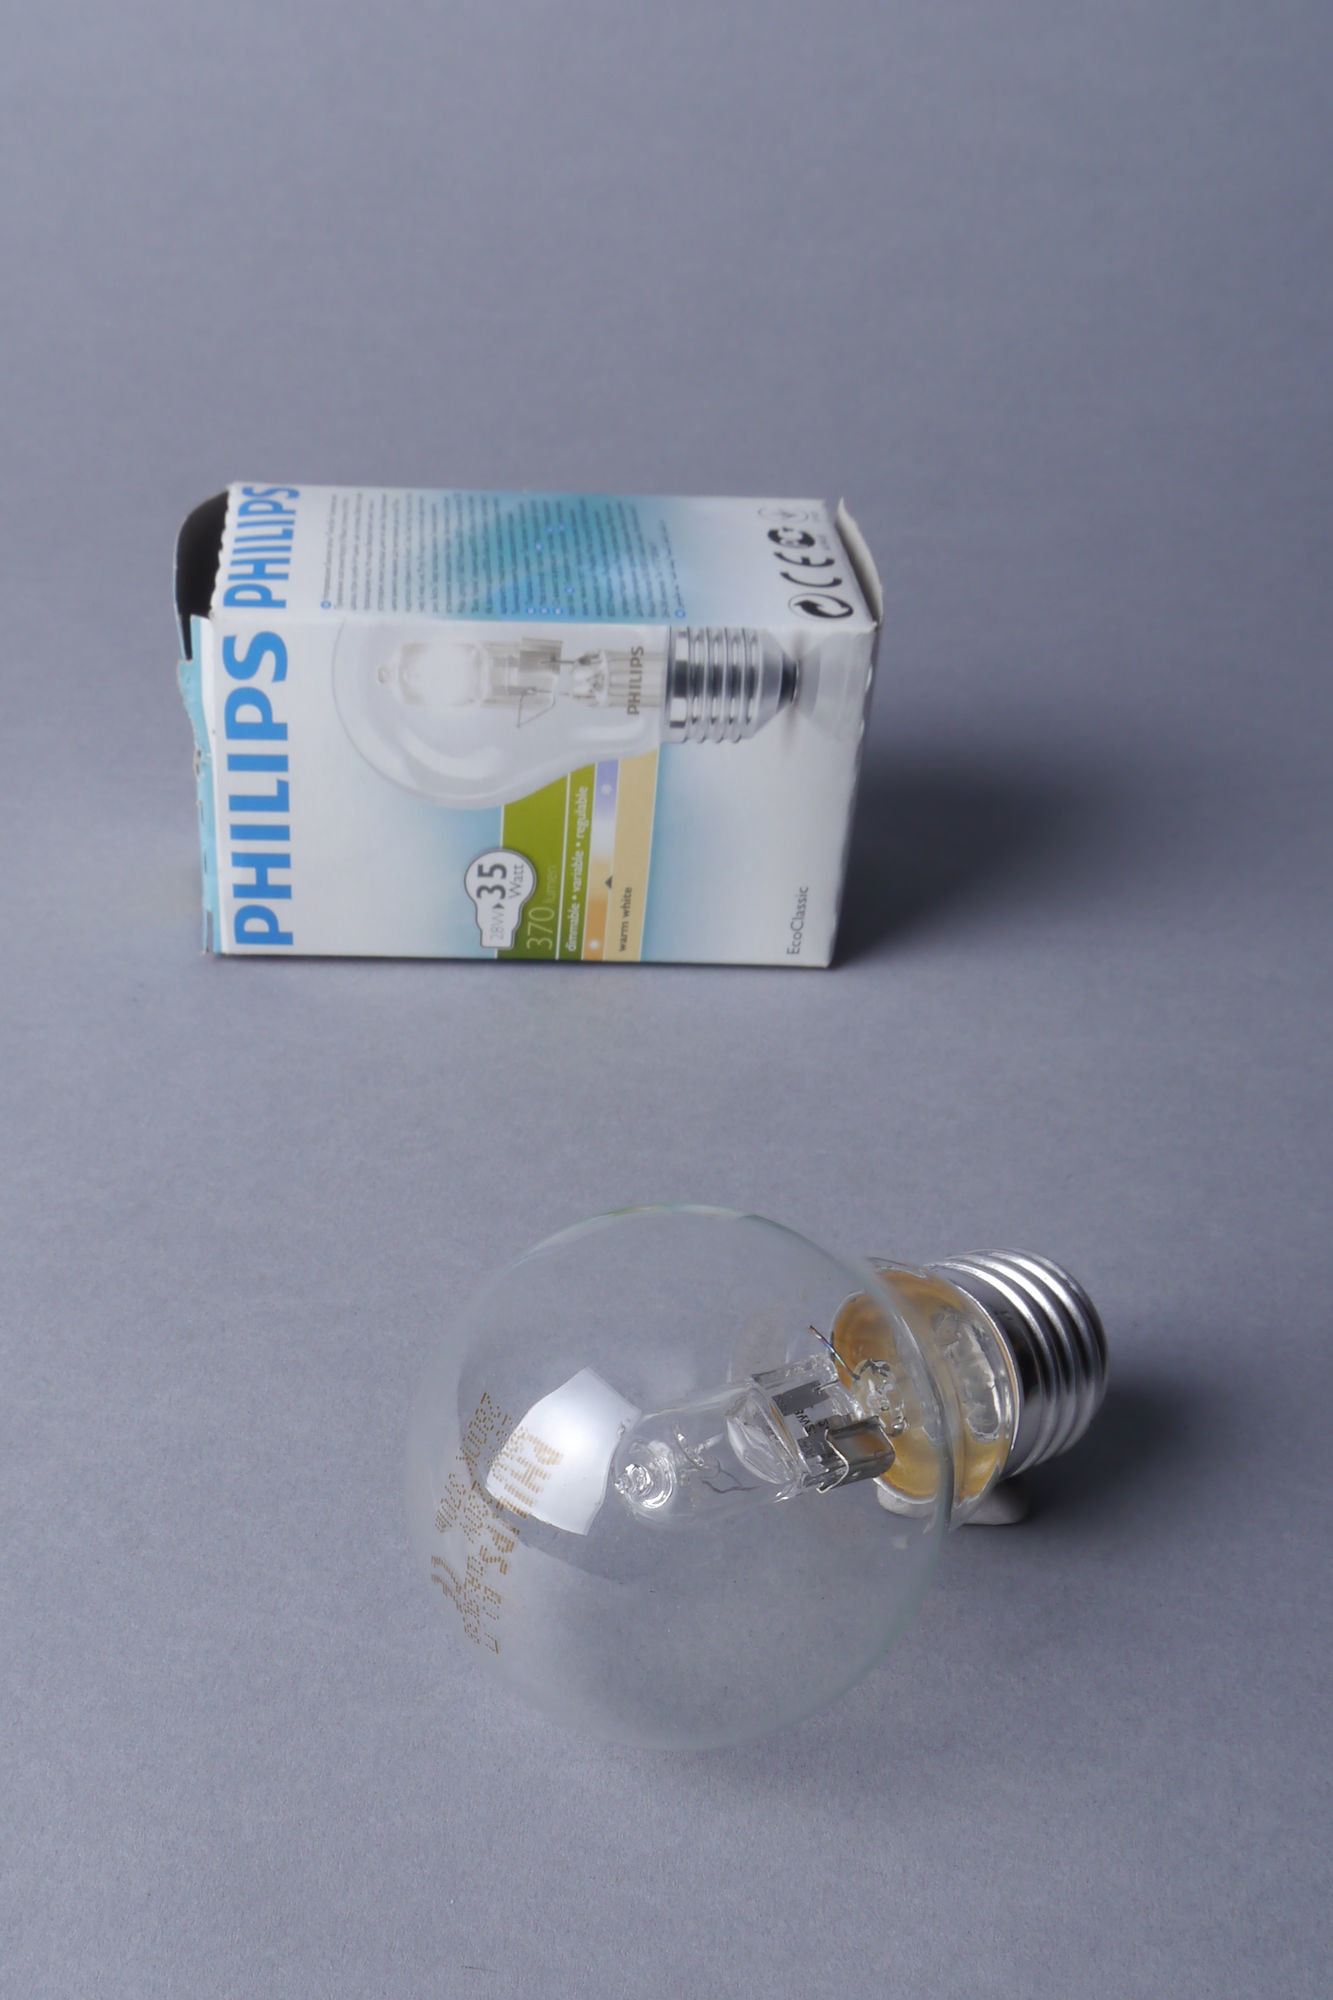 Halogeenlamp van het merk Philips